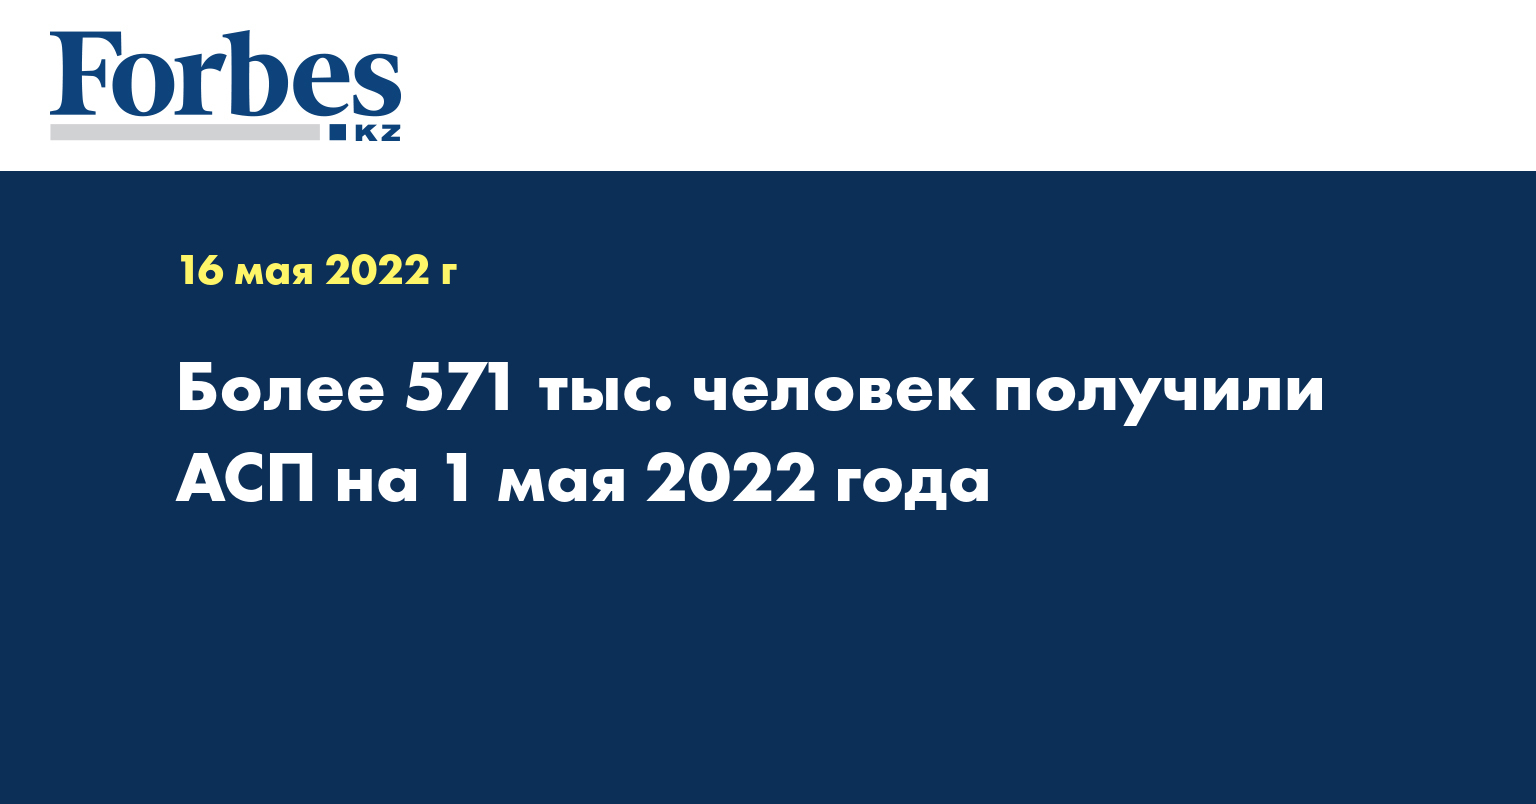 Более 571 тыс. человек получили АСП на 1 мая 2022 года